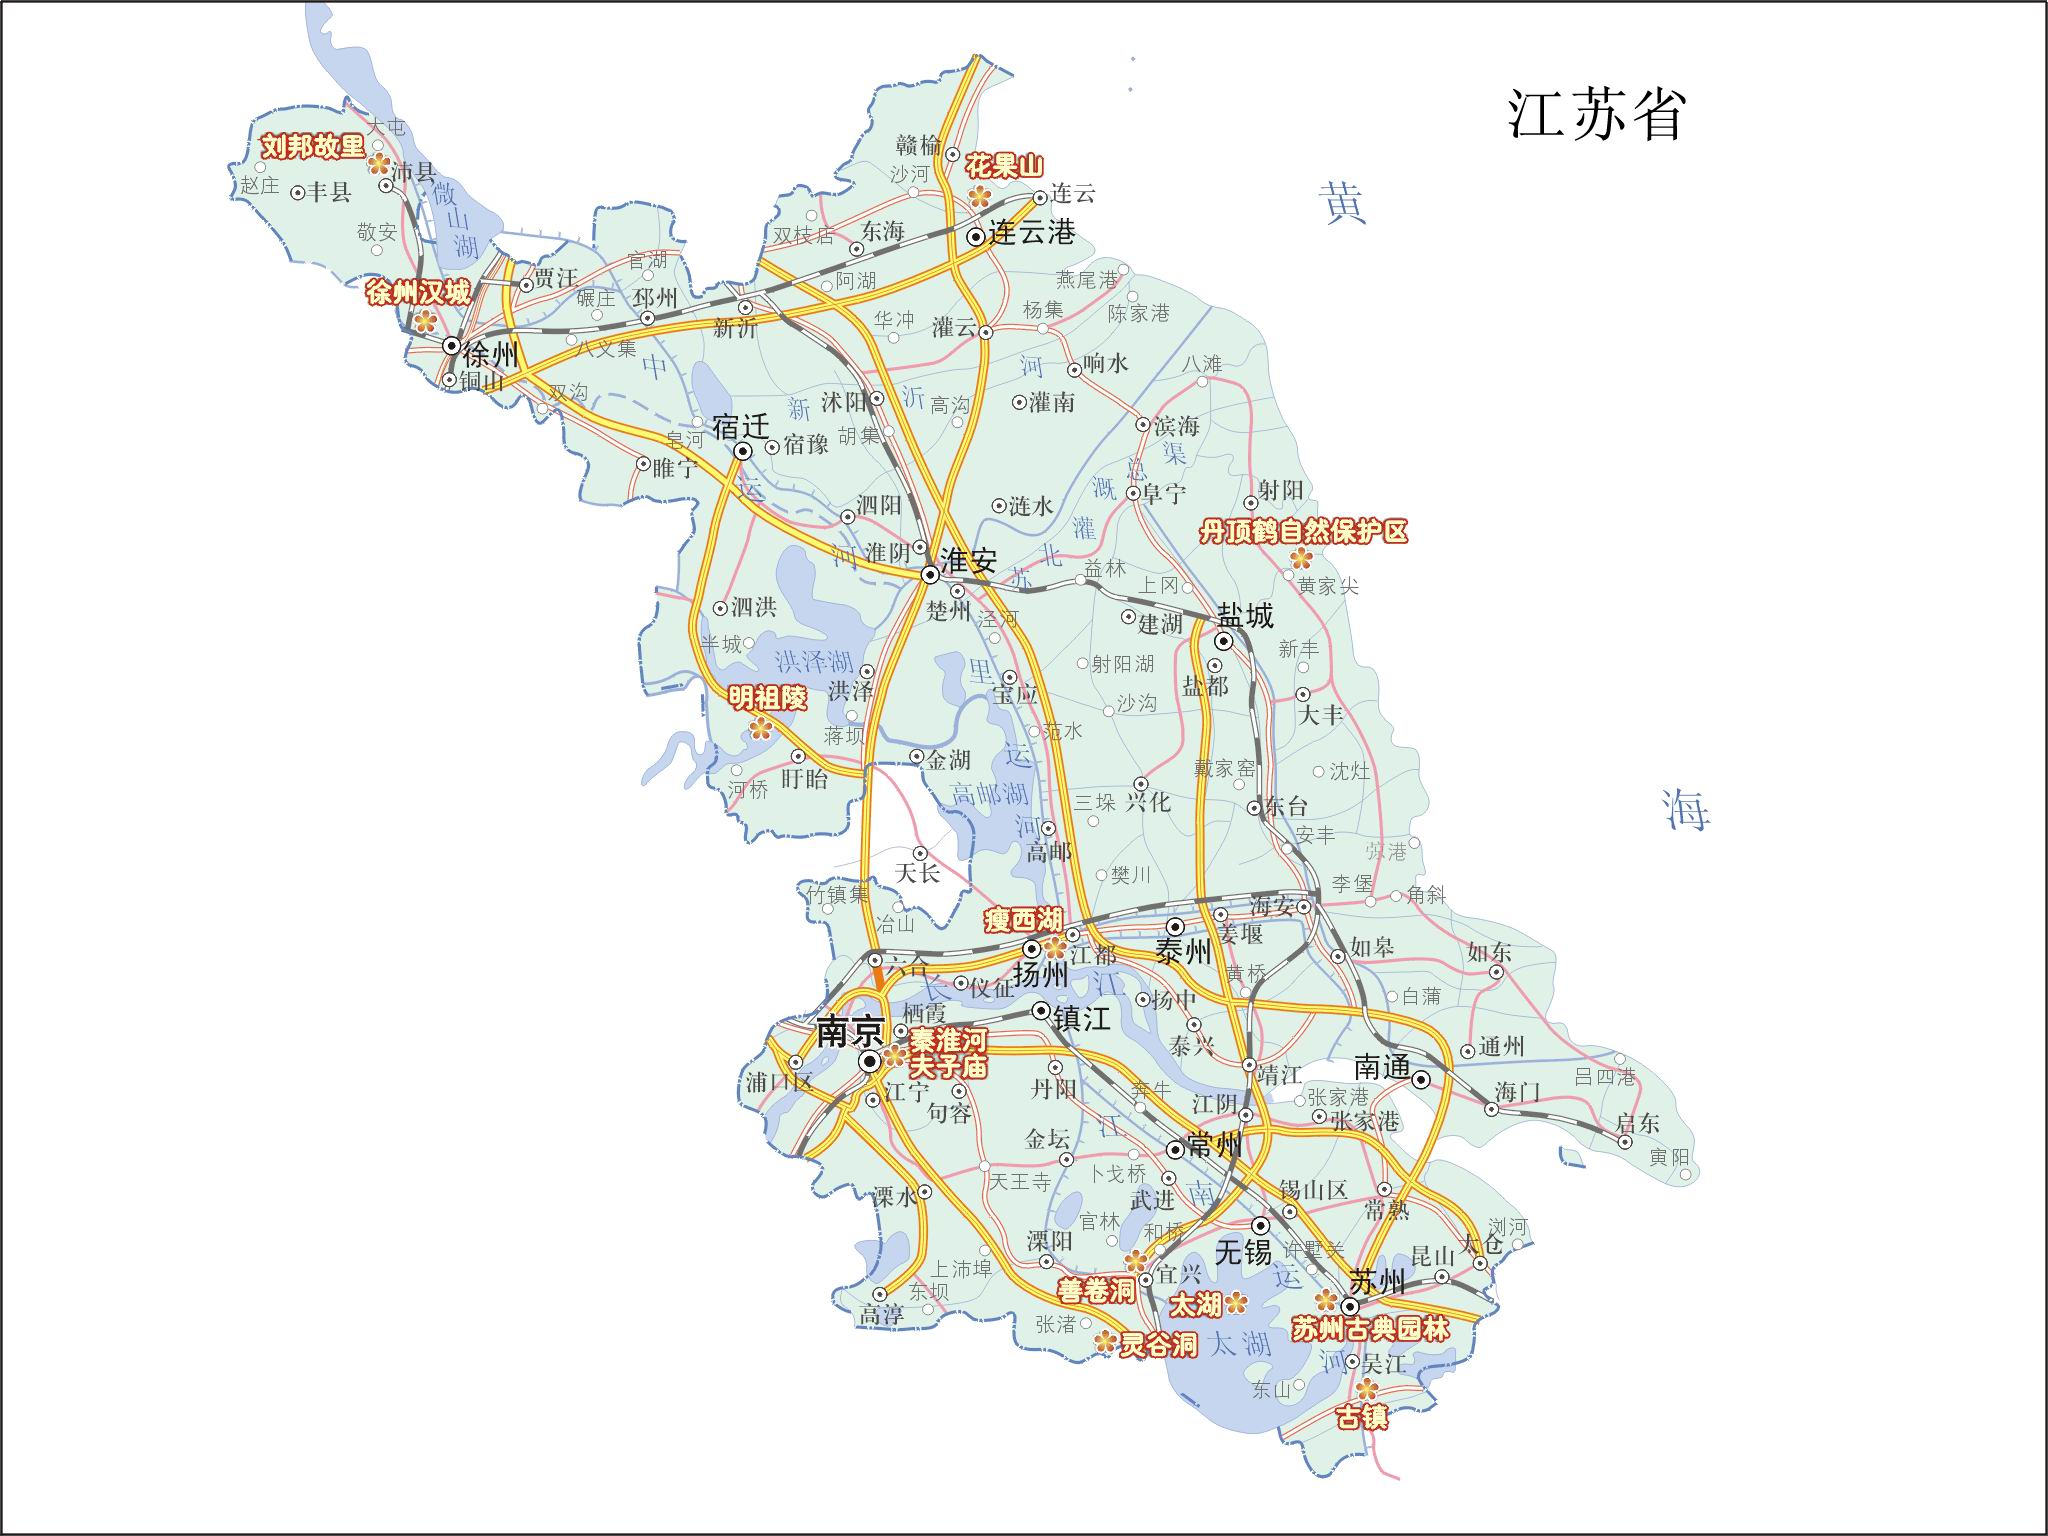 建国初期江苏为何没有被设置为一个省? - 绝密历史 - 历史频道 - 华声在线